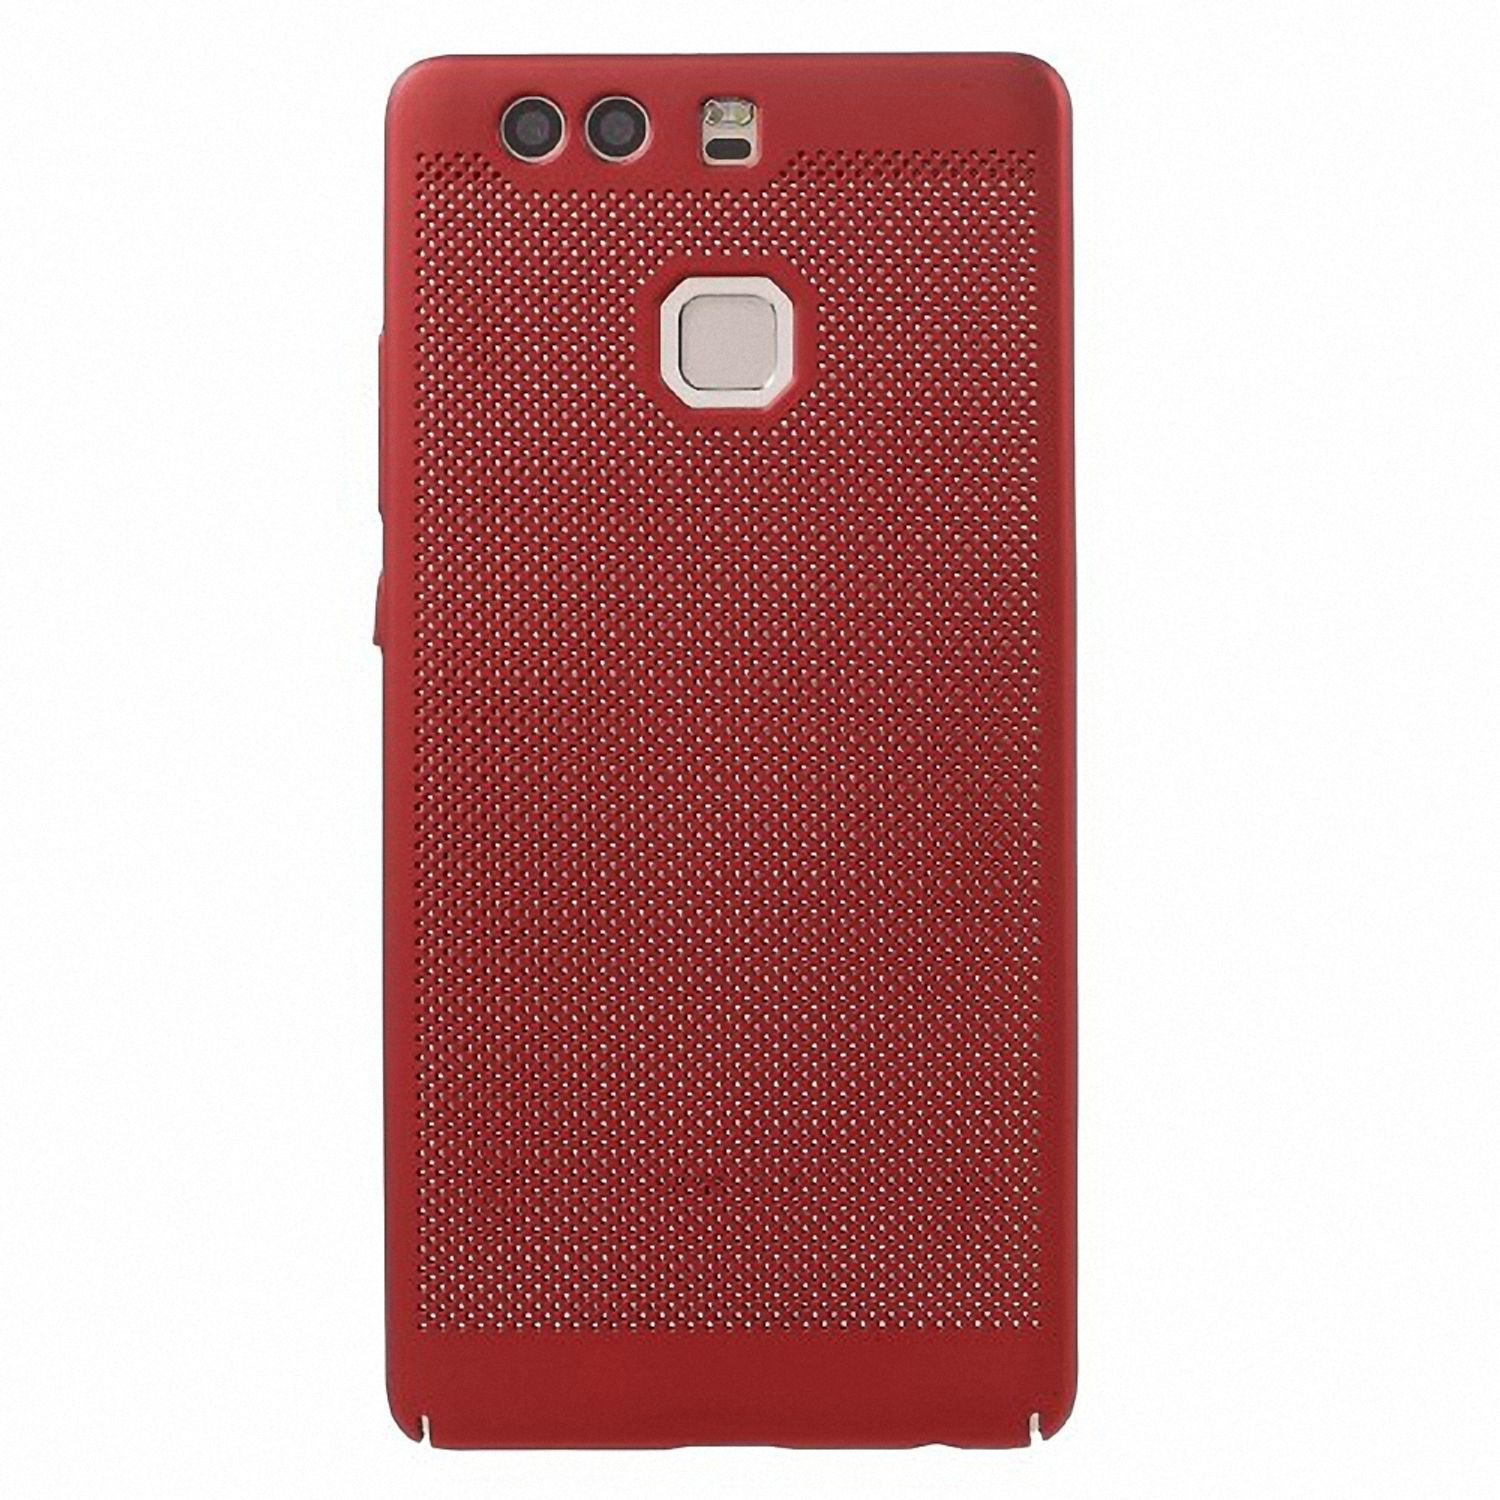 DESIGN Rot P9, KÖNIG Schutzhülle, Huawei, Backcover,